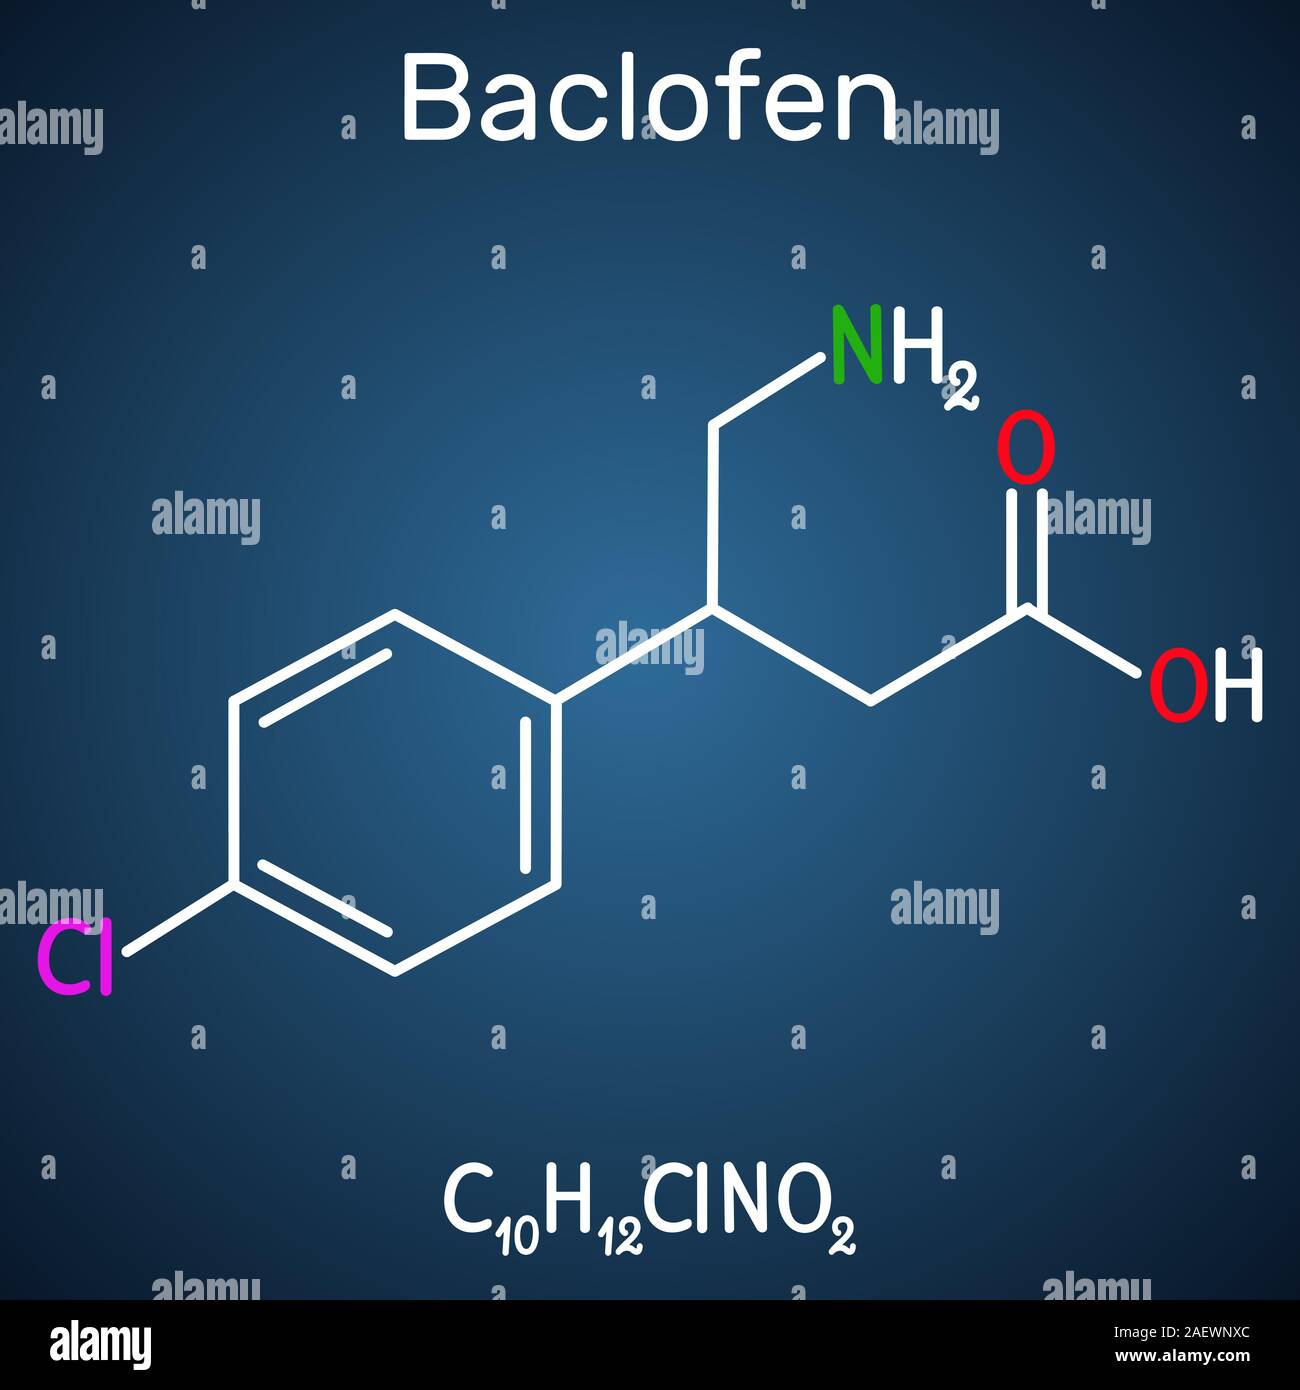 Baclofen Molekül C10H12ClNO2, ist ein Medikament, das zur Behandlung der Spastik der Muskulatur. Strukturelle chemische Formel auf dem dunkelblauen Hintergrund. Vektor illust Stock Vektor